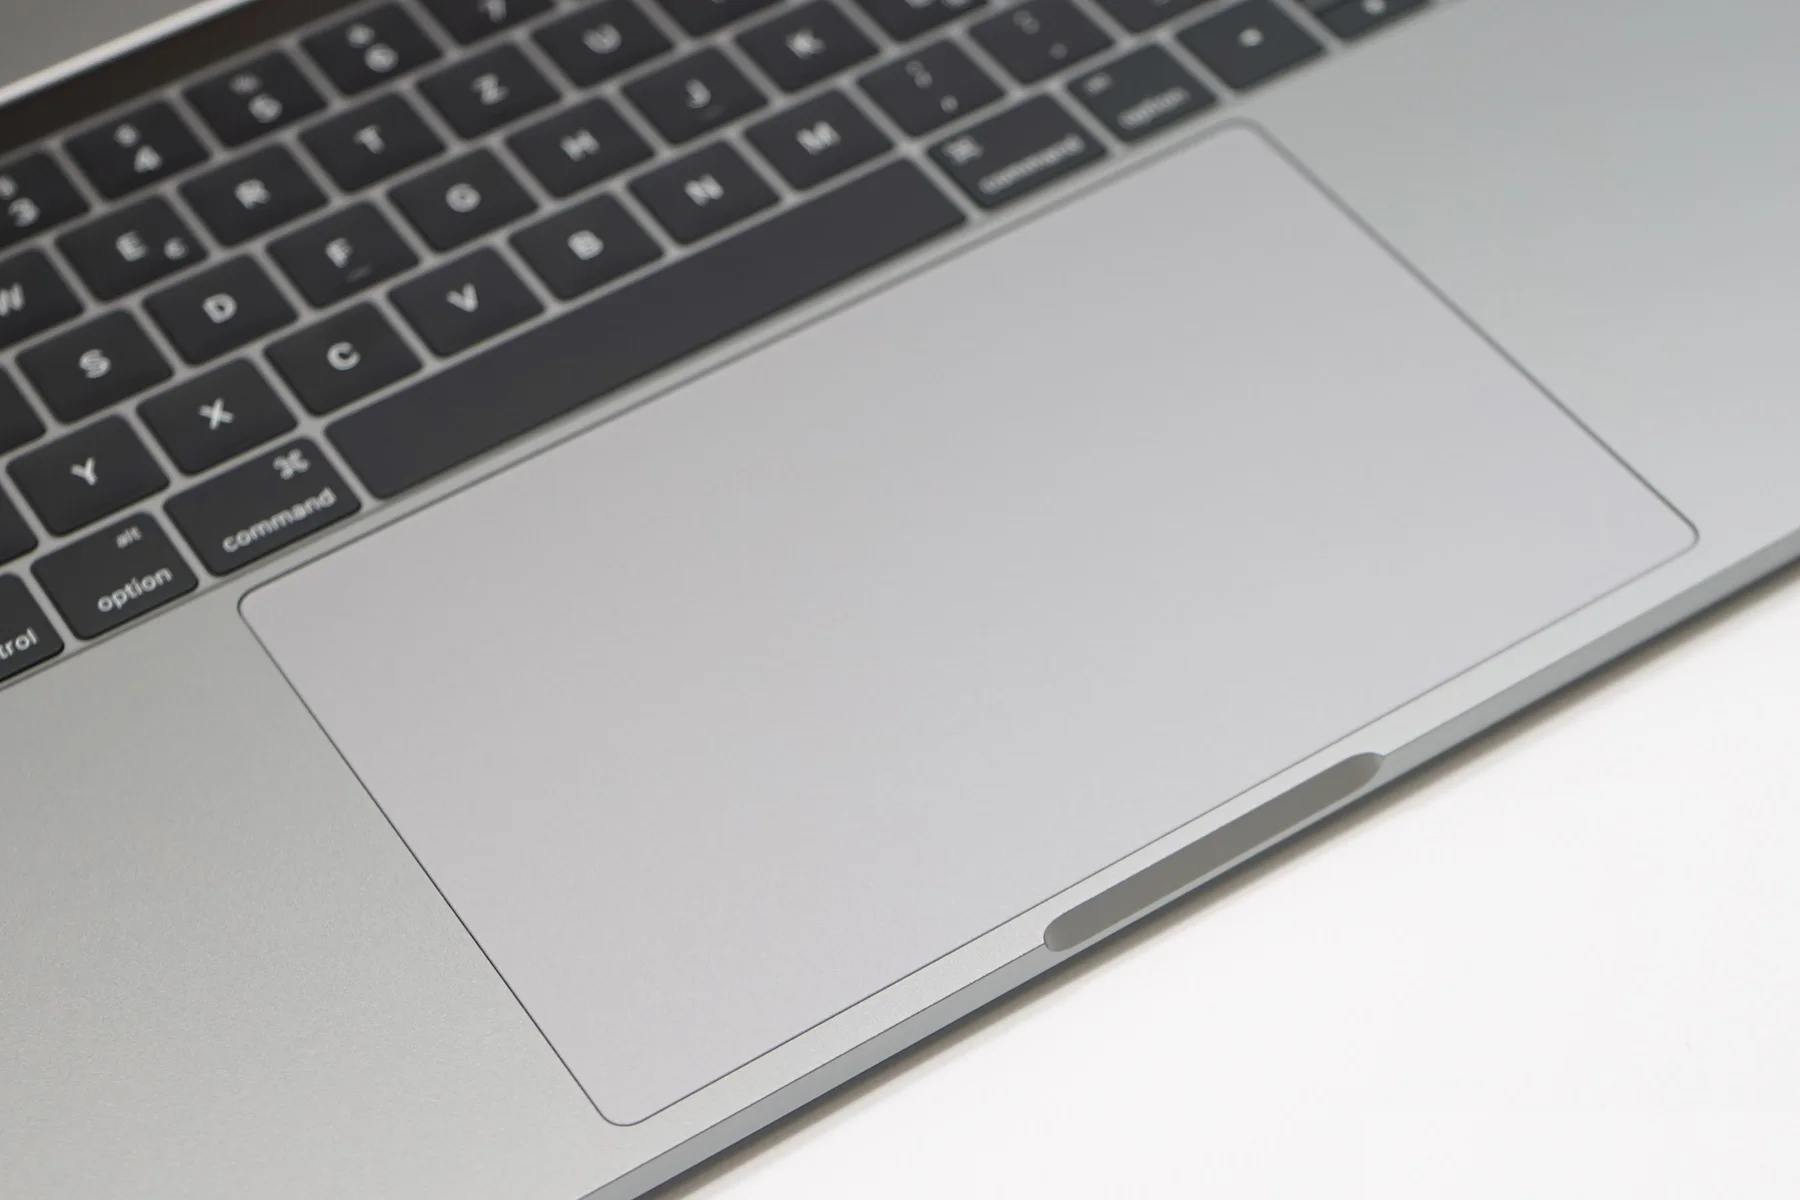 Apple-MacBook-Pro-15-2017